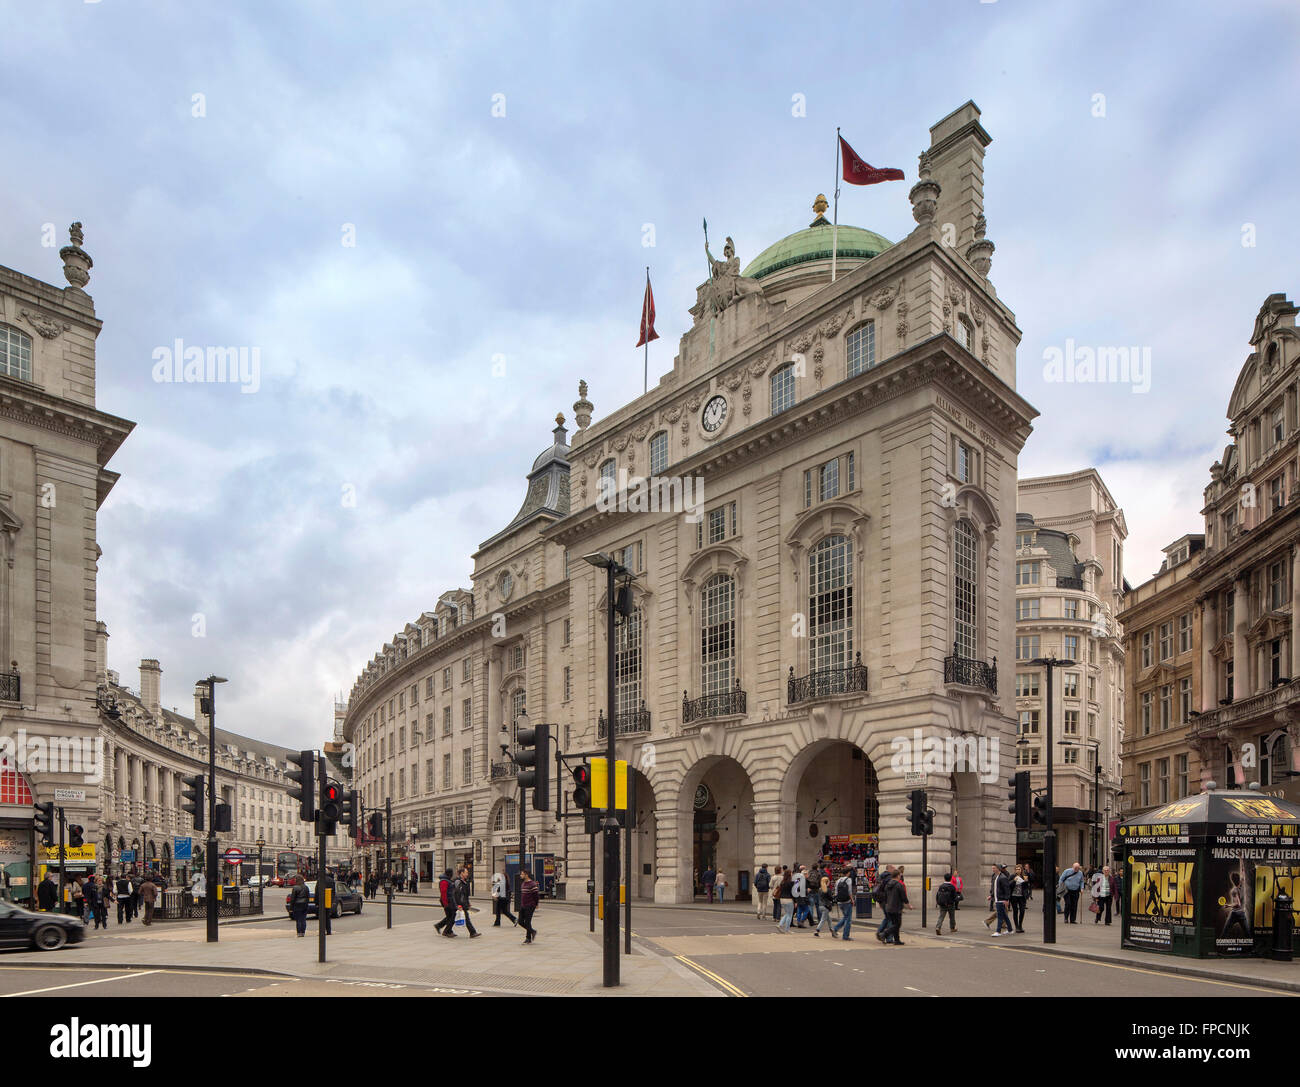 Una vista esterna di un famoso edificio a Londra, il Cafe Royal. Foto Stock